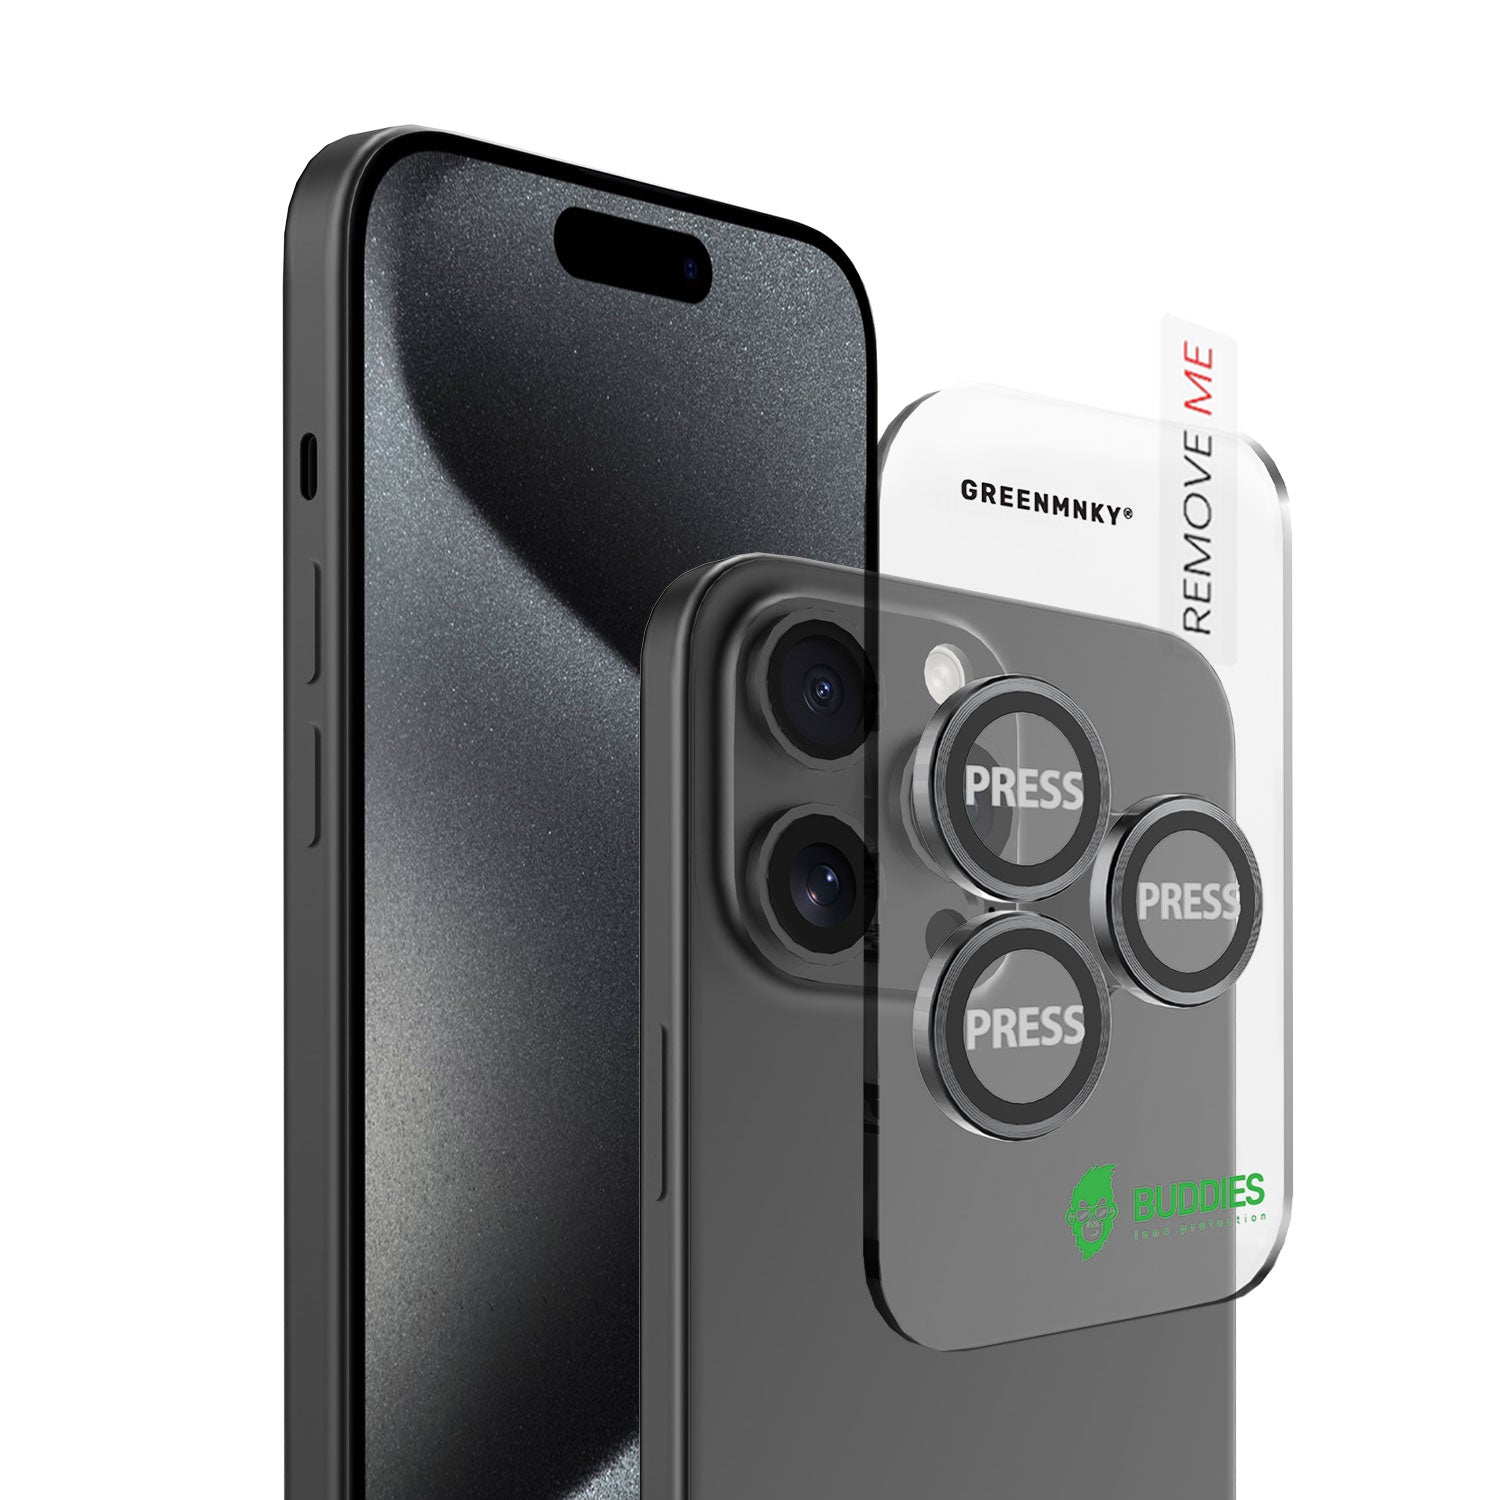 BUDDIES Kameraschutz für iPhone 15 Pro